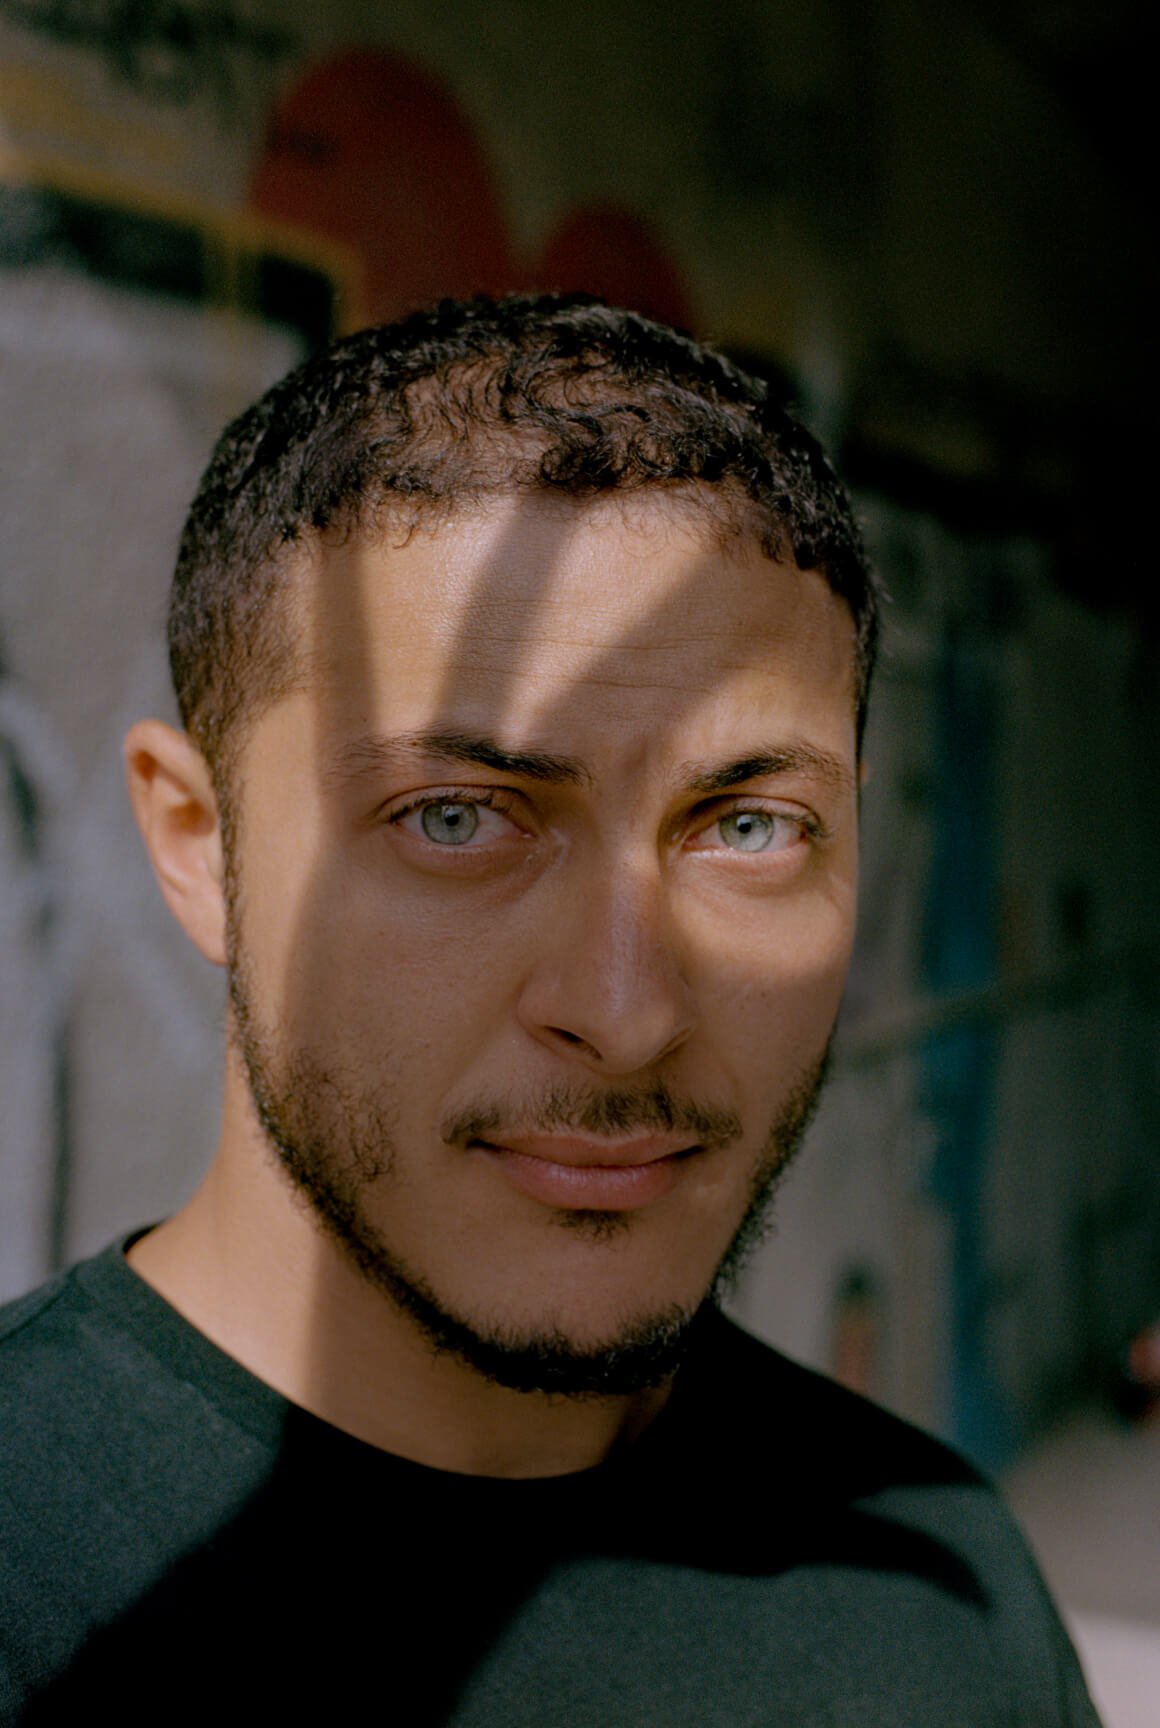 Retrato de um tunisiano de olhos azuis e uma sombra em forma de mão projetada sobre o rosto.